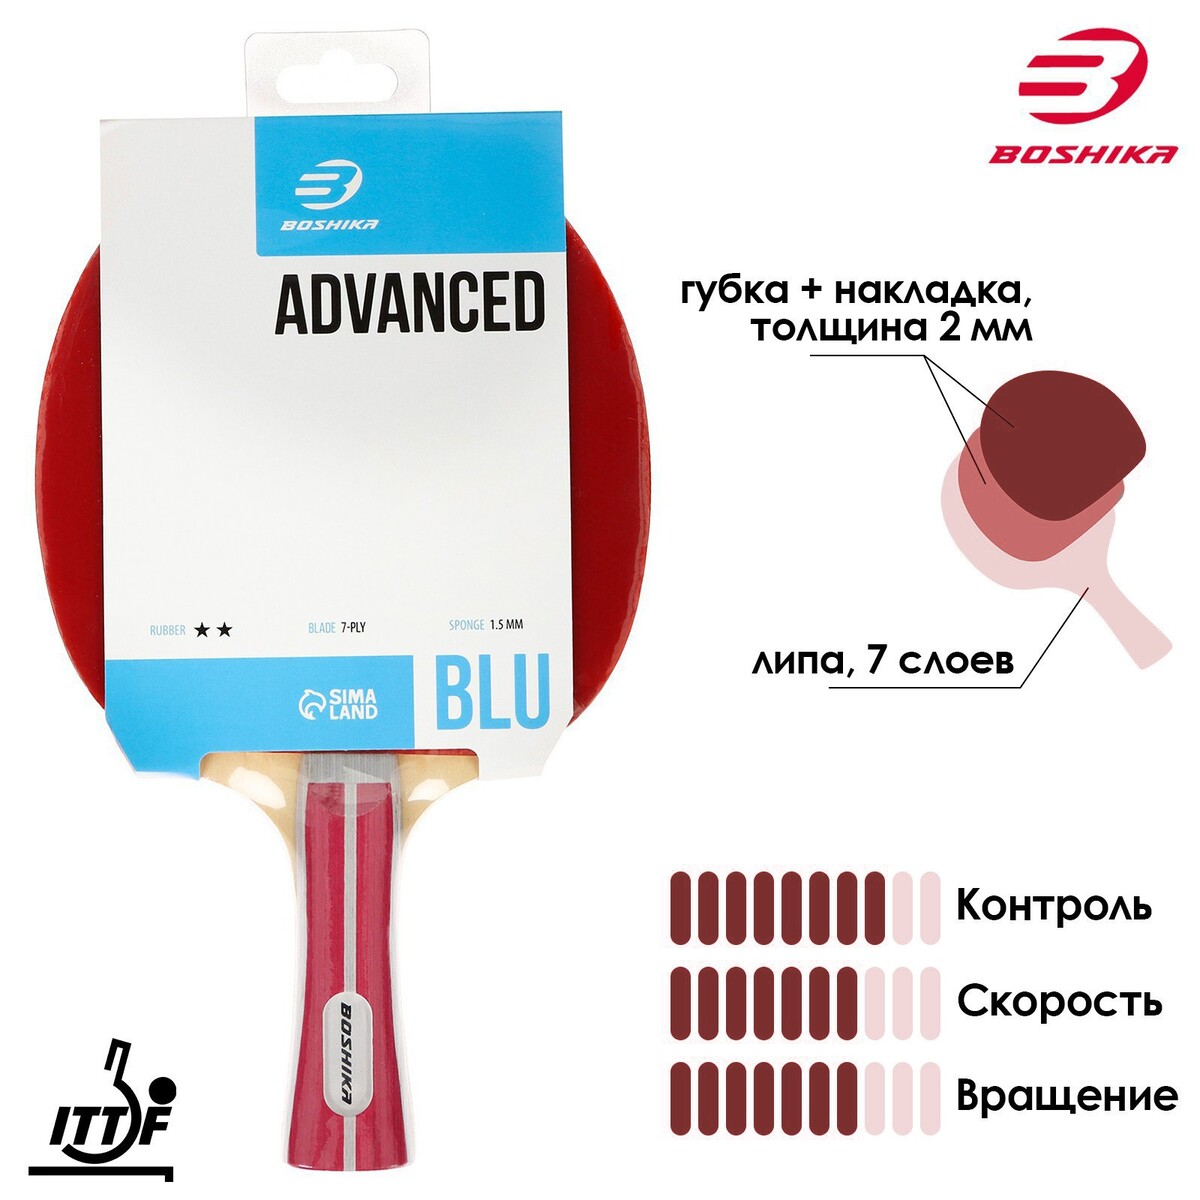 Ракетка для настольного тенниса boshika advanced 2*, для любителей, накладка double fish 815 1.5 мм, коническая ручка тренажер для настольного тенниса start line h600